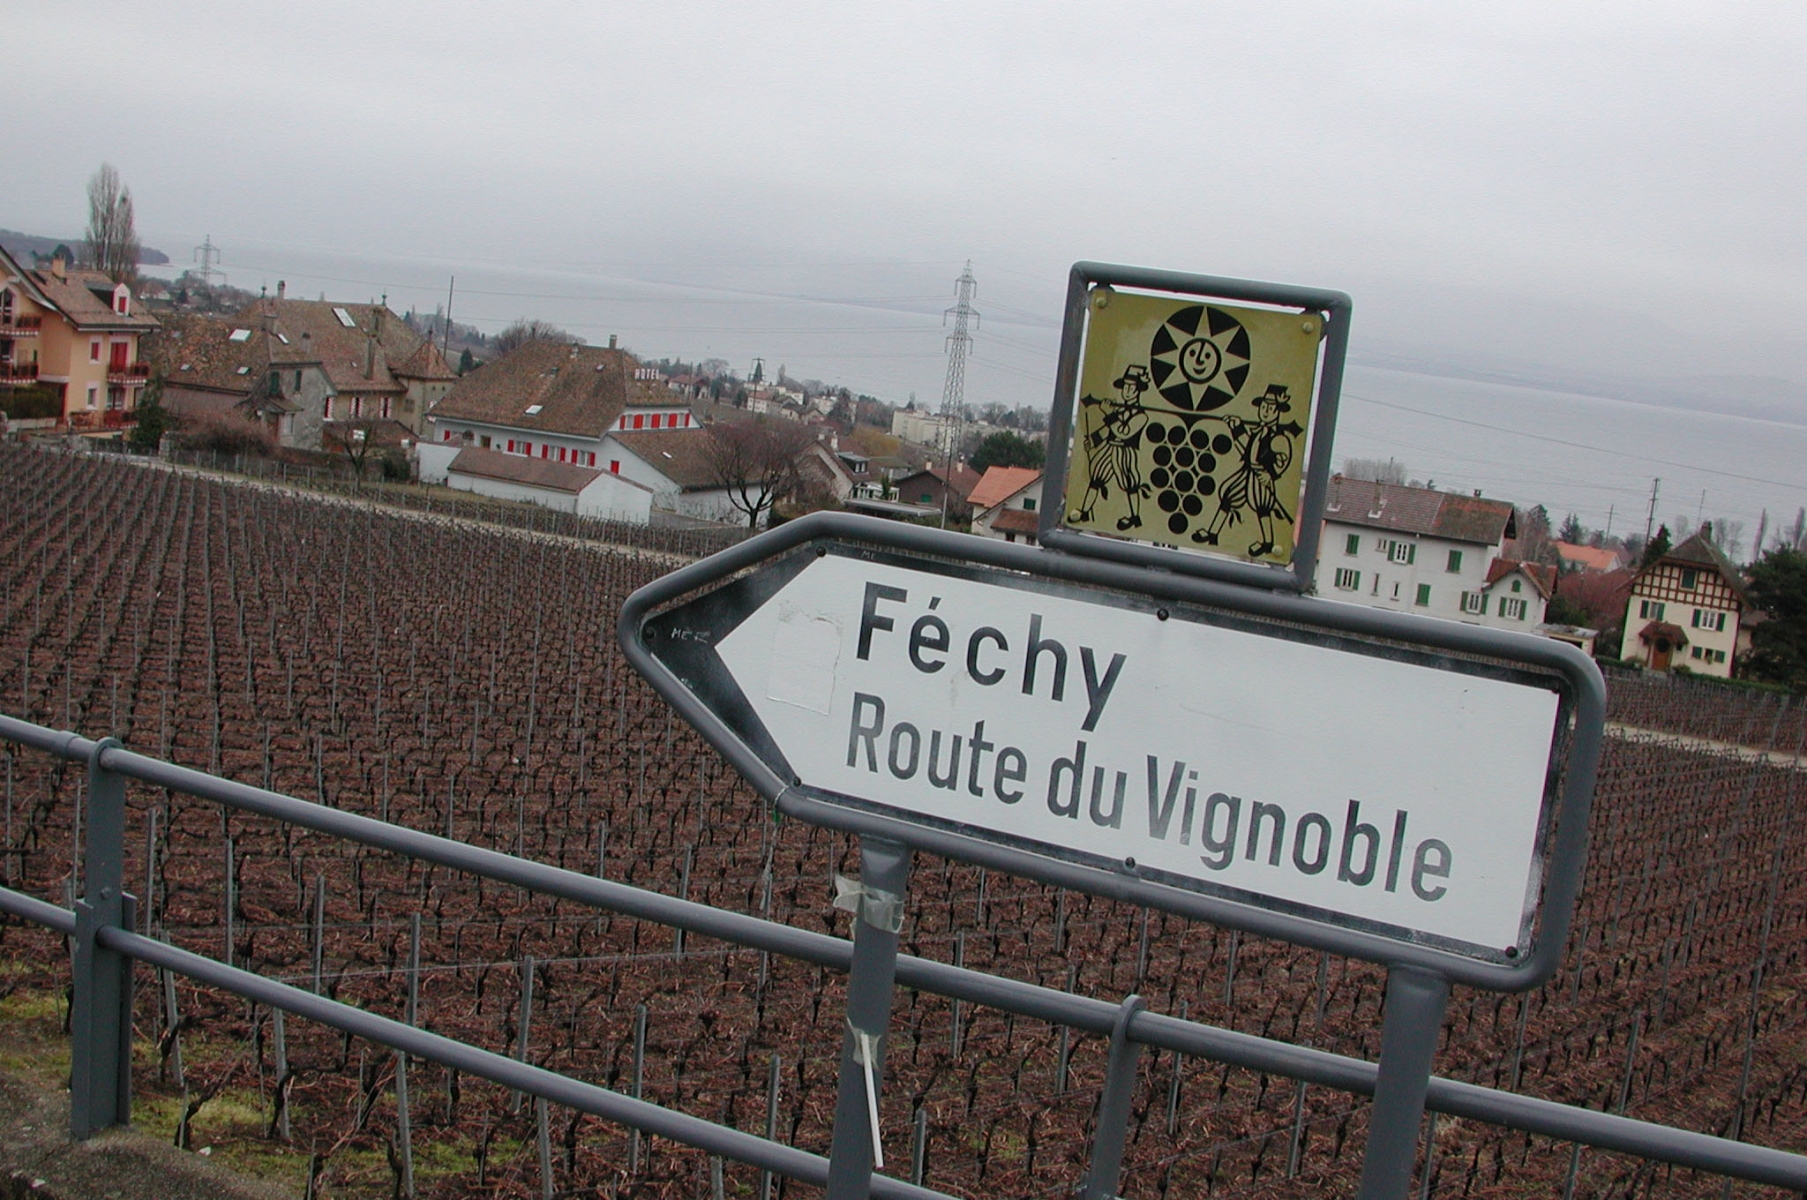 la Route du Vignoble s'affiche dans la région.
6 mars 2003